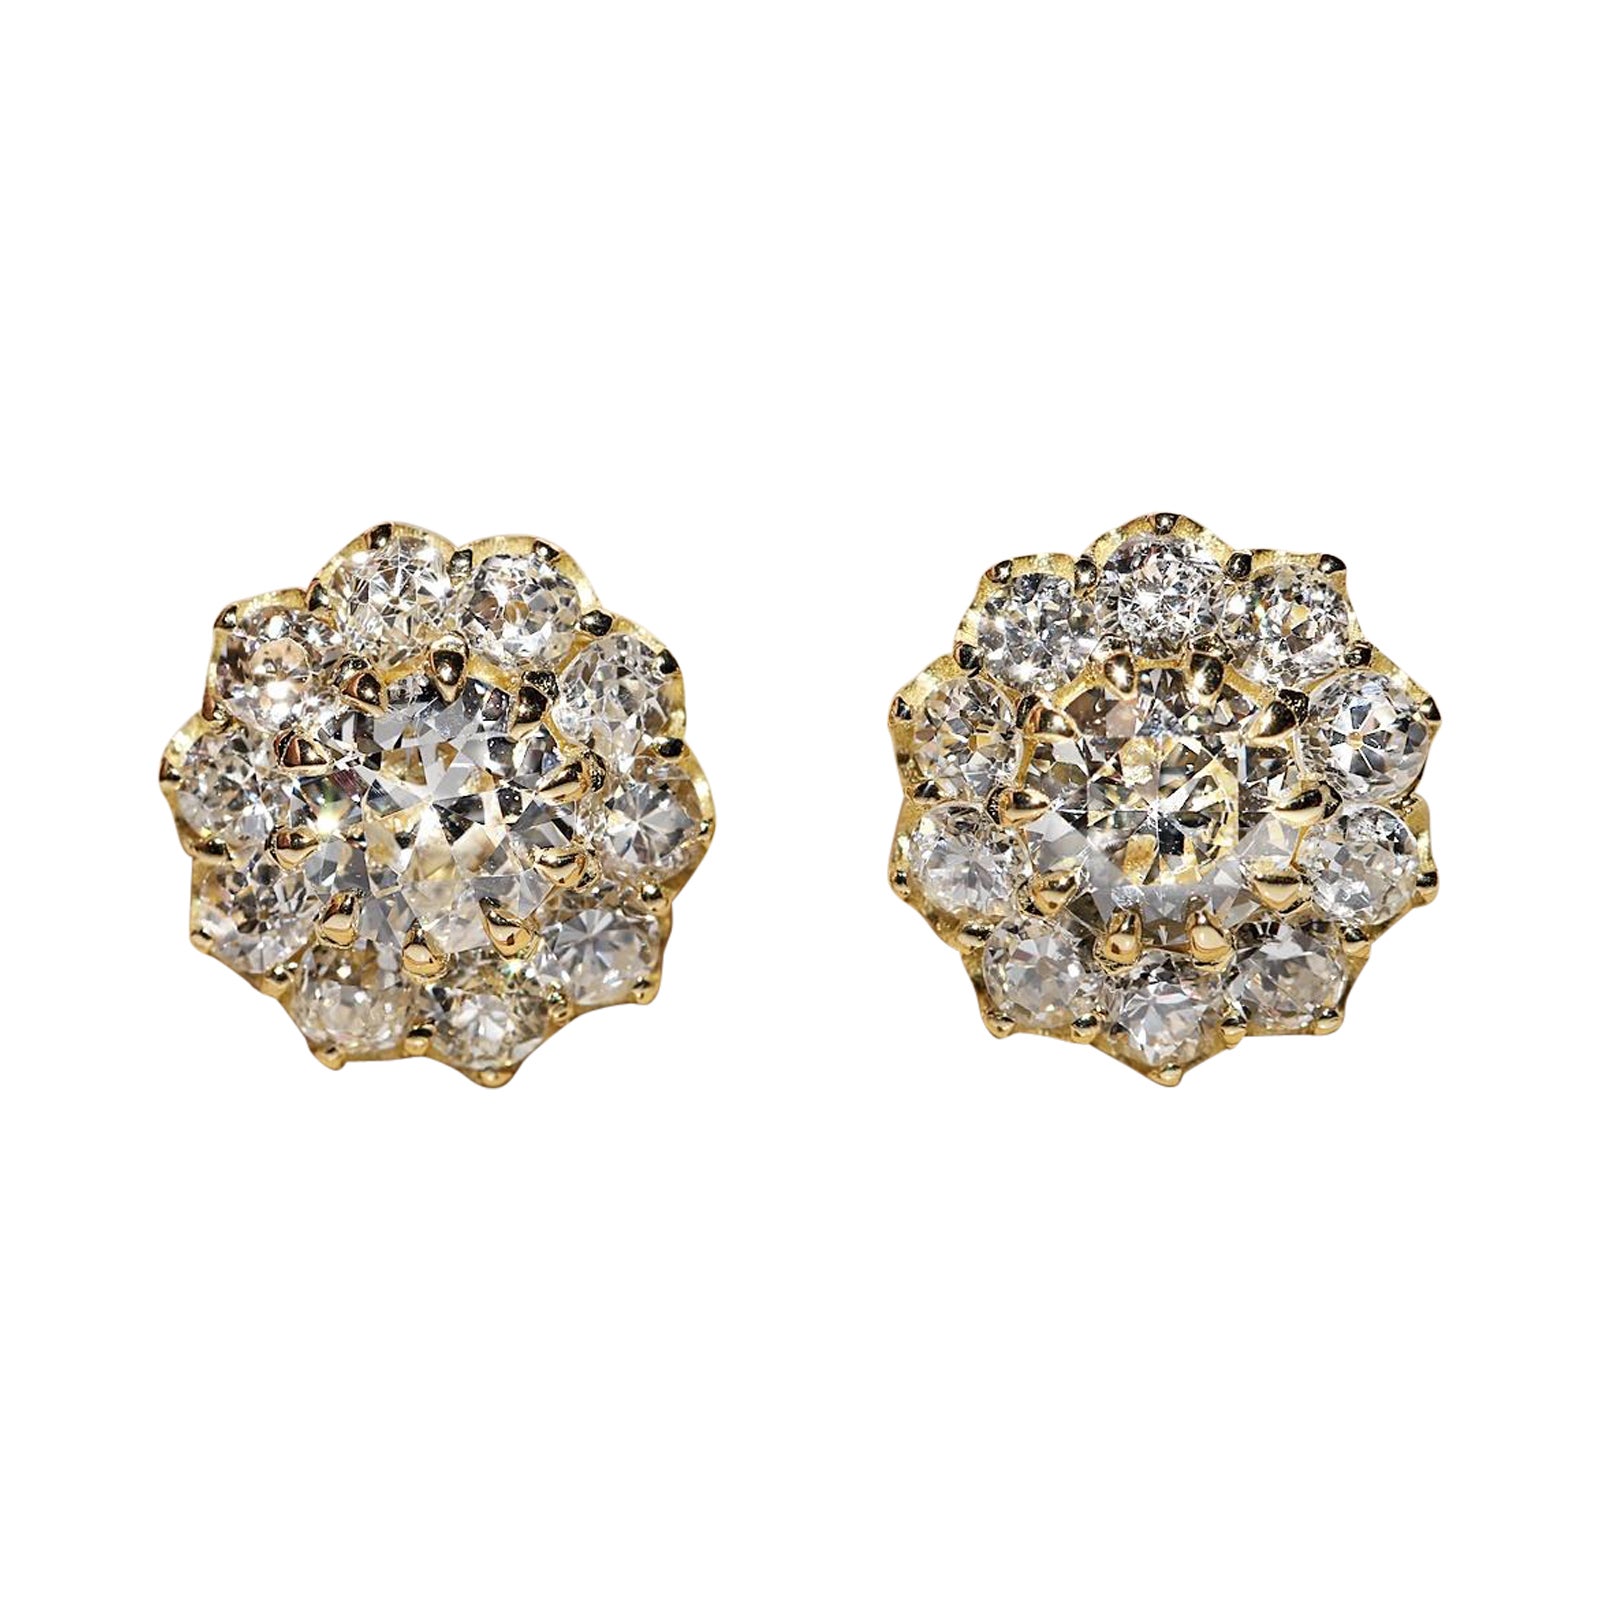 Jolie boucle d'oreille en or 18k ornée de diamants naturels de fabrication récente 